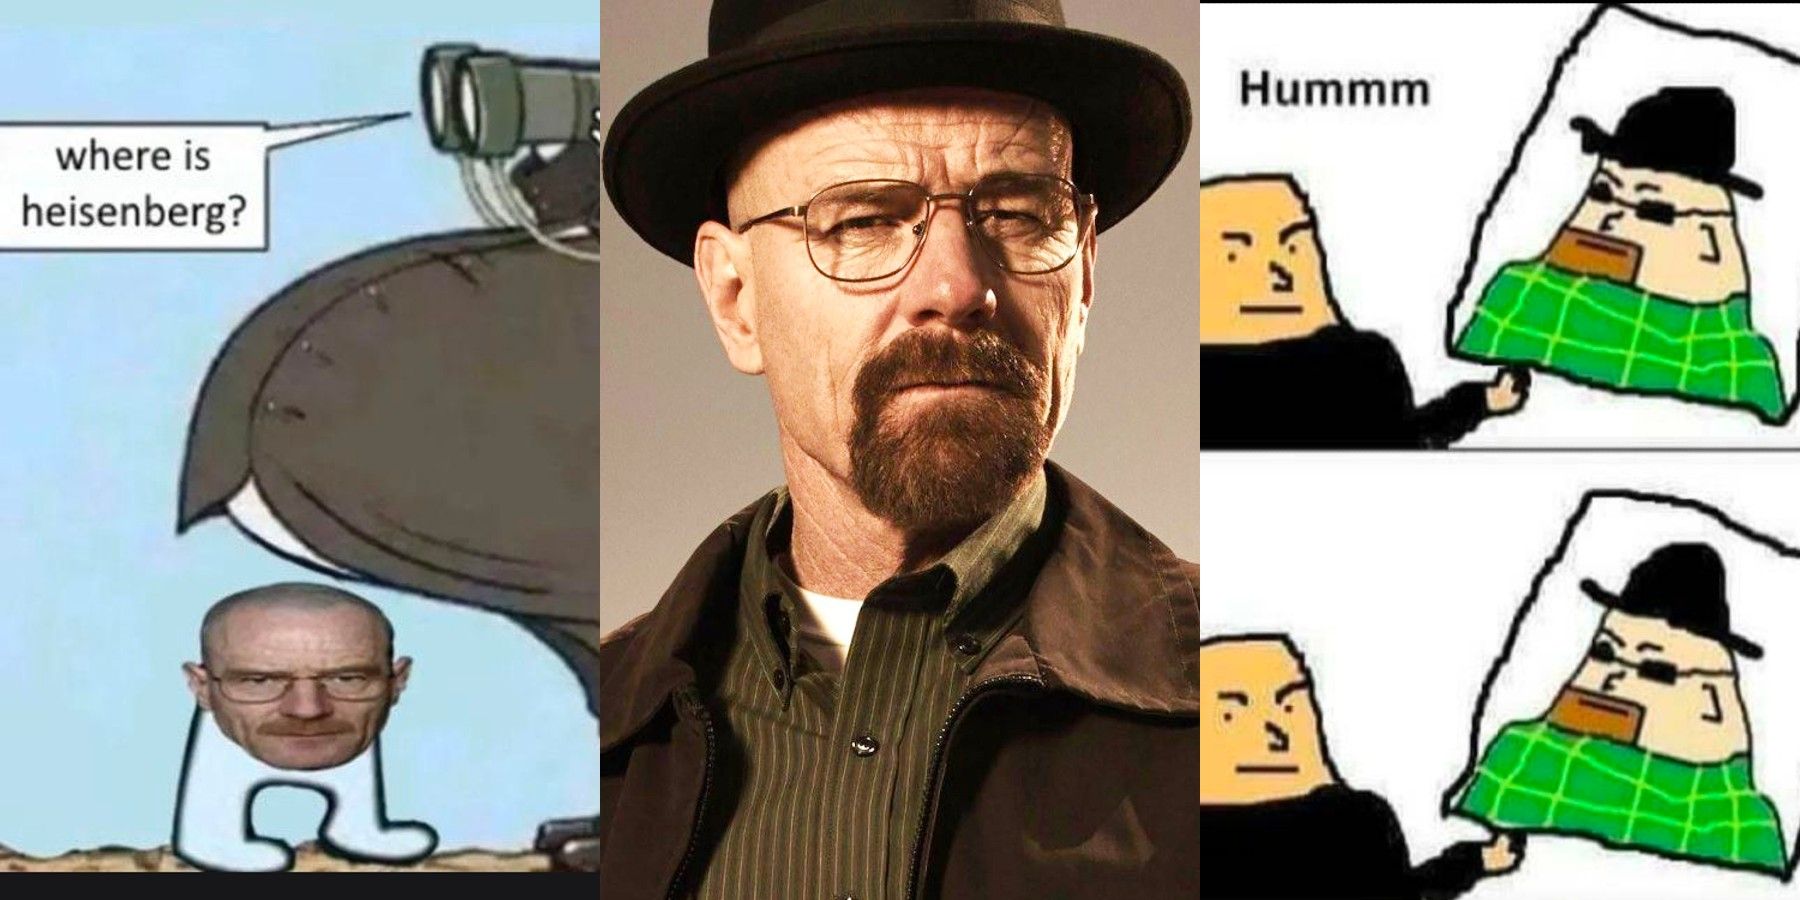 heisenberg meme